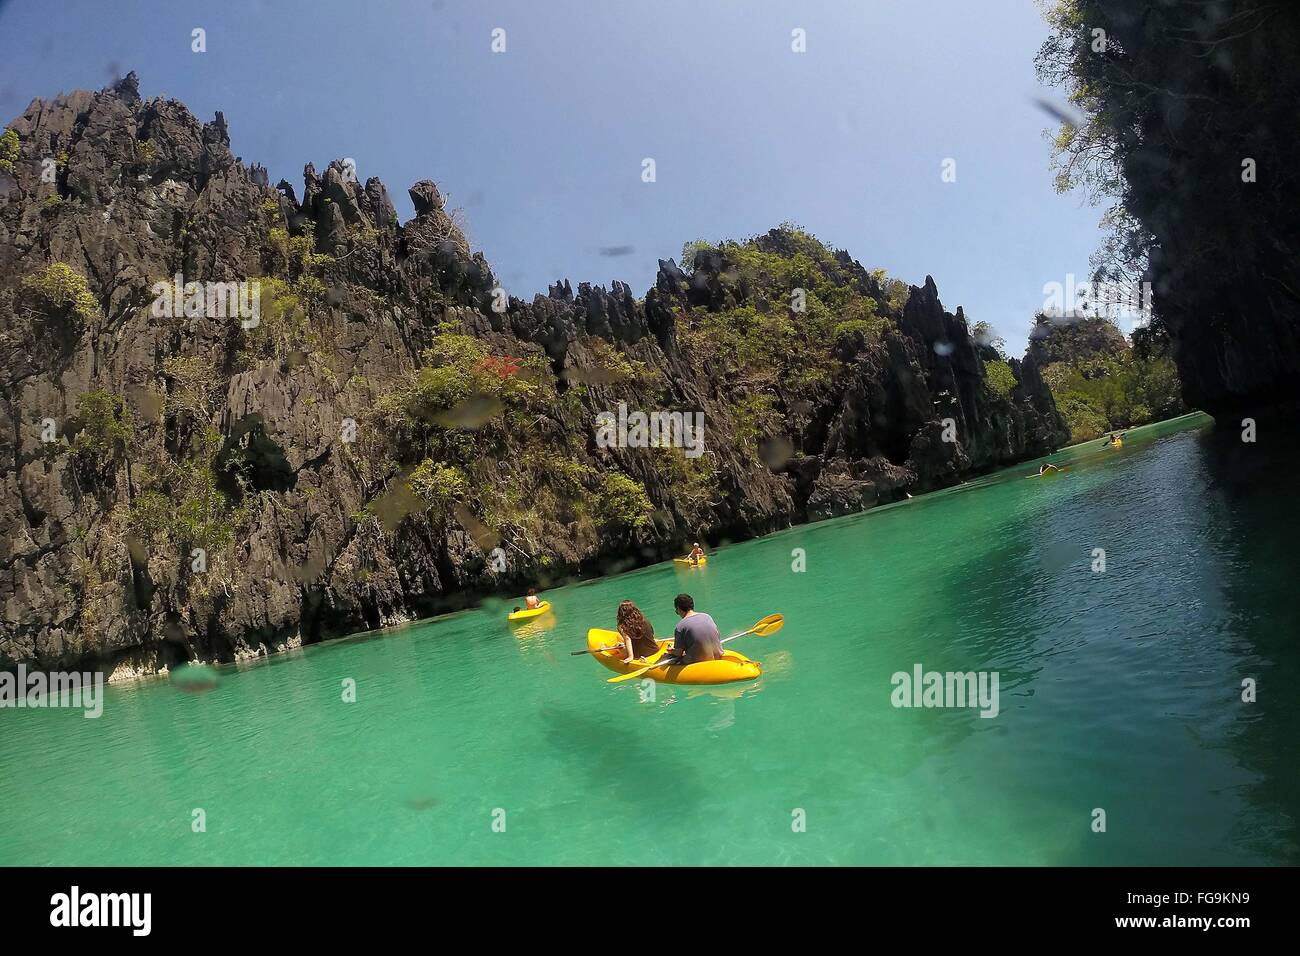 (160218) -- PALAWAN provincia, Feb 18, 2016 (Xinhua) -- vacanzieri prendere kayak a tour intorno a formazioni di calcare nella provincia di Palawan nelle Filippine, febbraio 18, 2016. Turismo i ricavi sono attesi per raggiungere 6,5 miliardi di dollari dall'arrivi di sei milioni di visitatori stranieri nel 2016 secondo il filippino Dipartimento del Turismo. (Xinhua/Rouelle Umali) Foto Stock